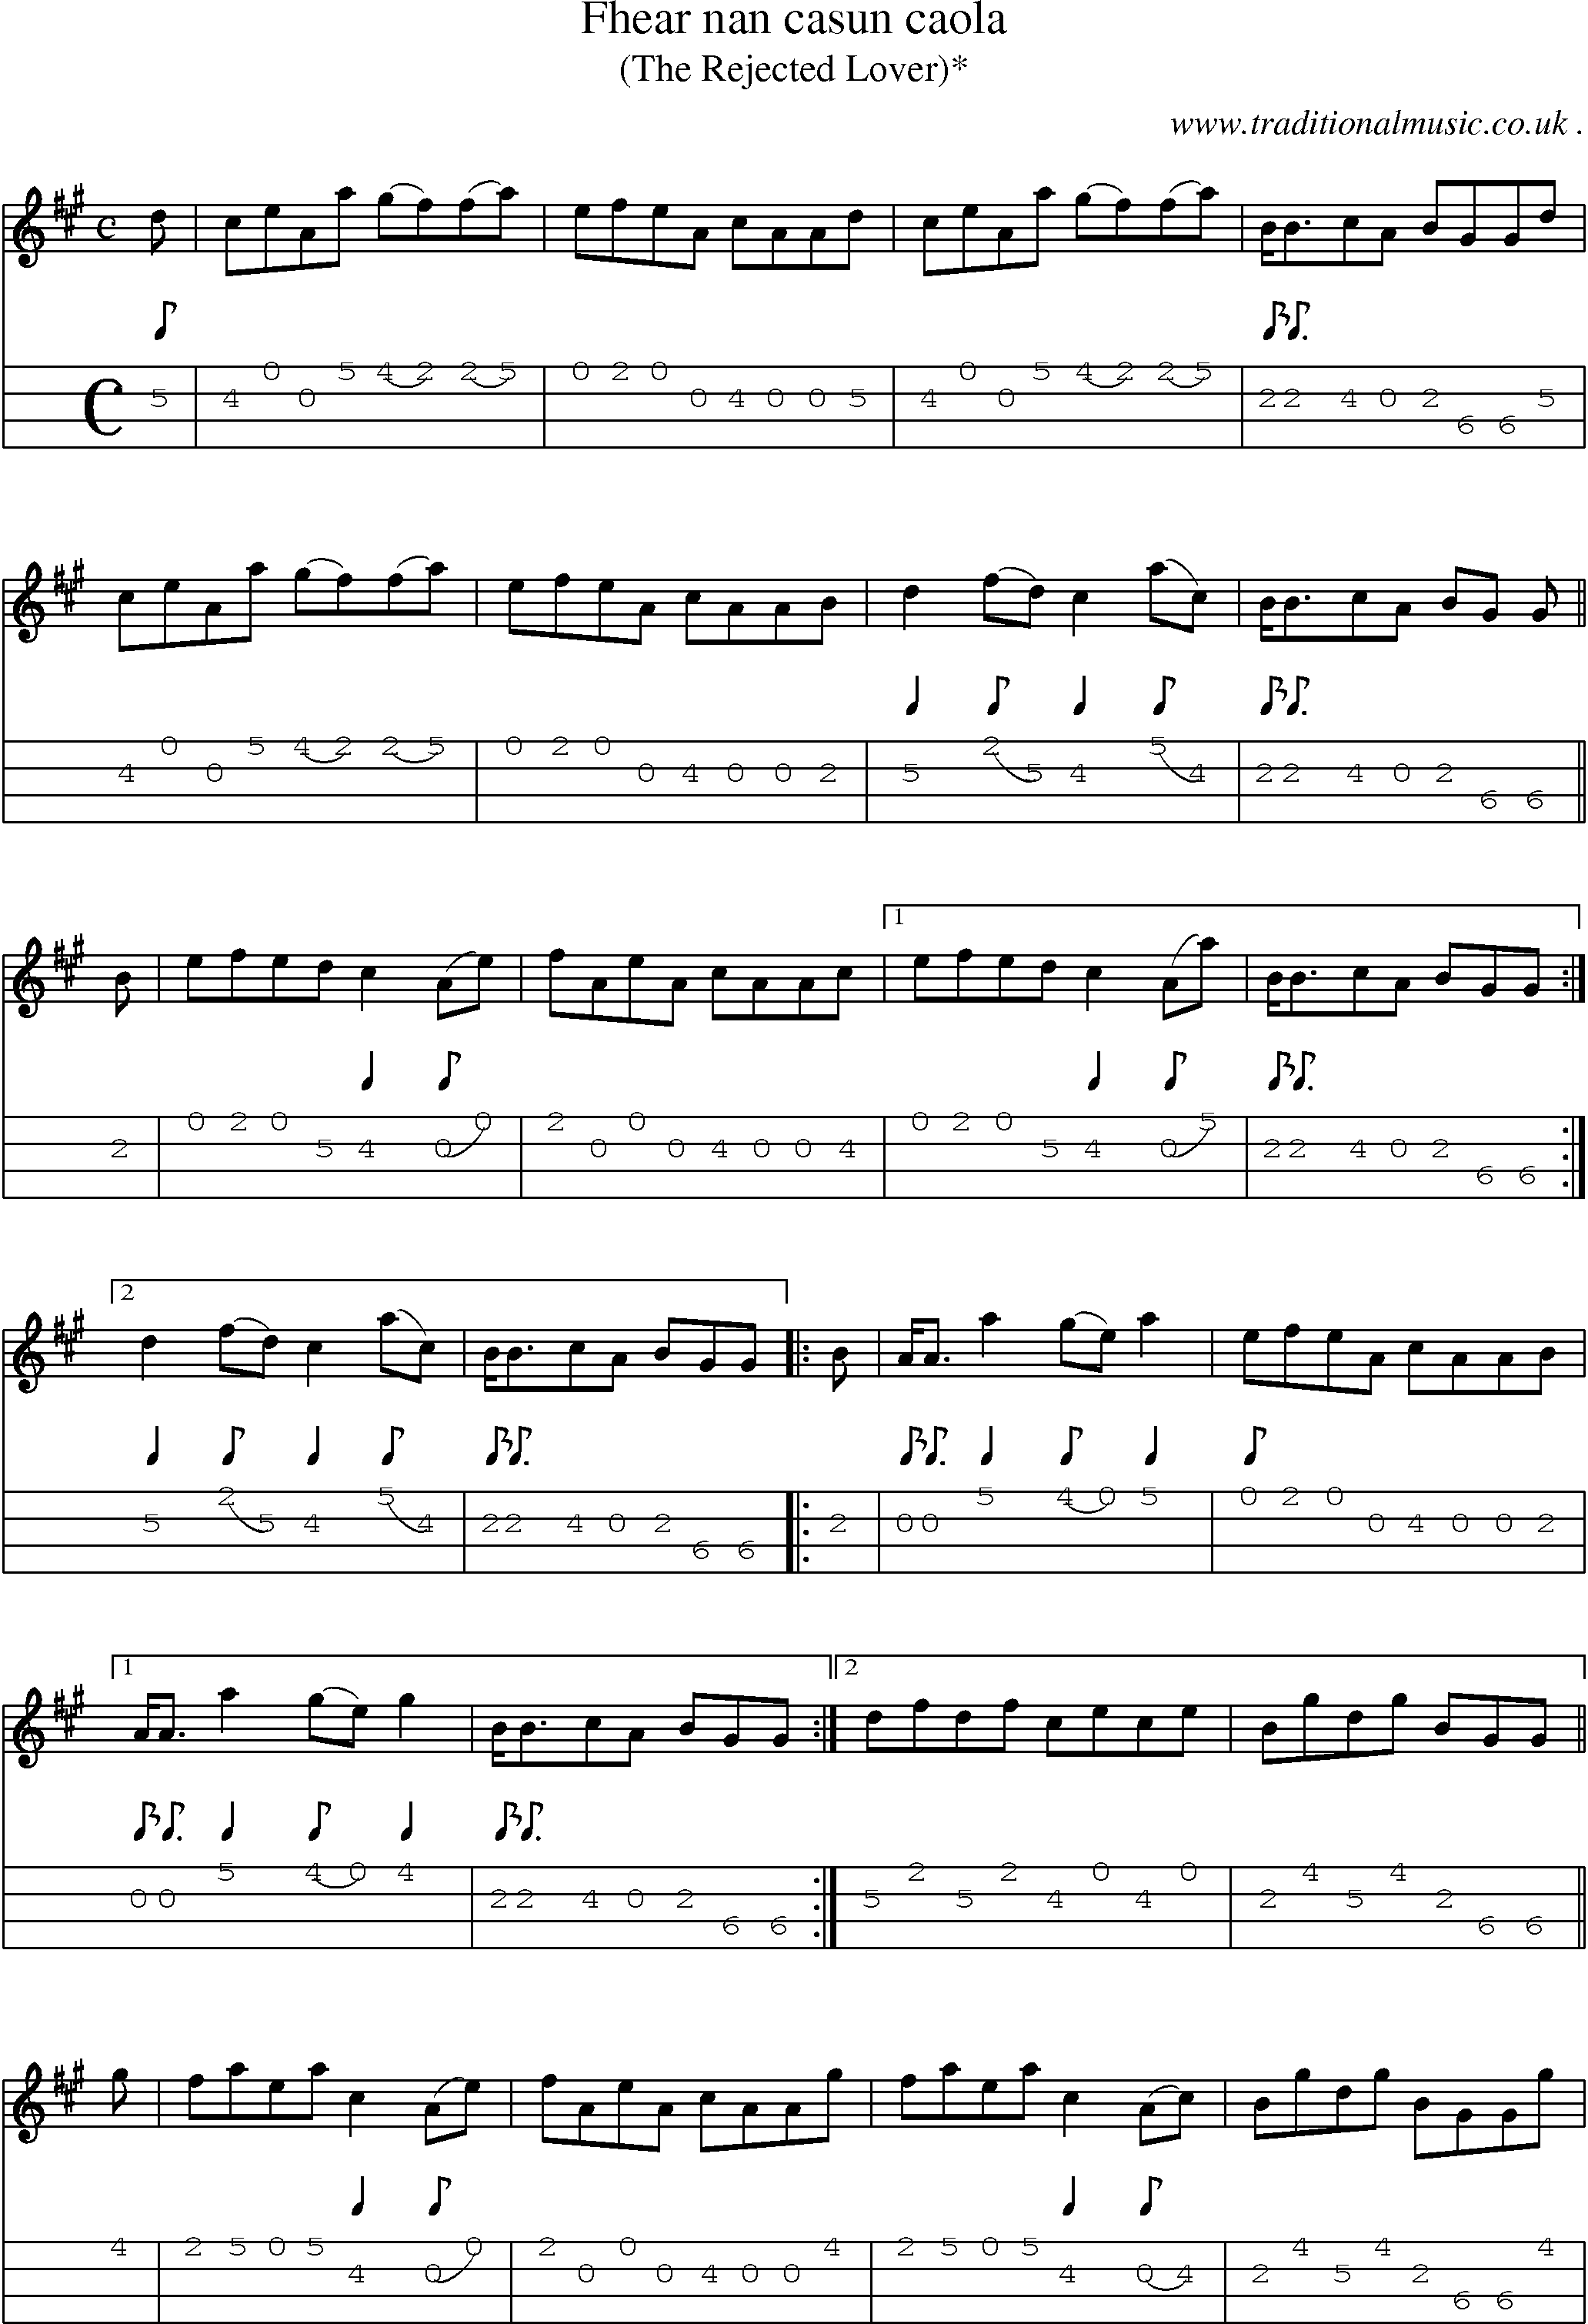 Sheet-music  score, Chords and Mandolin Tabs for Fhear Nan Casun Caola